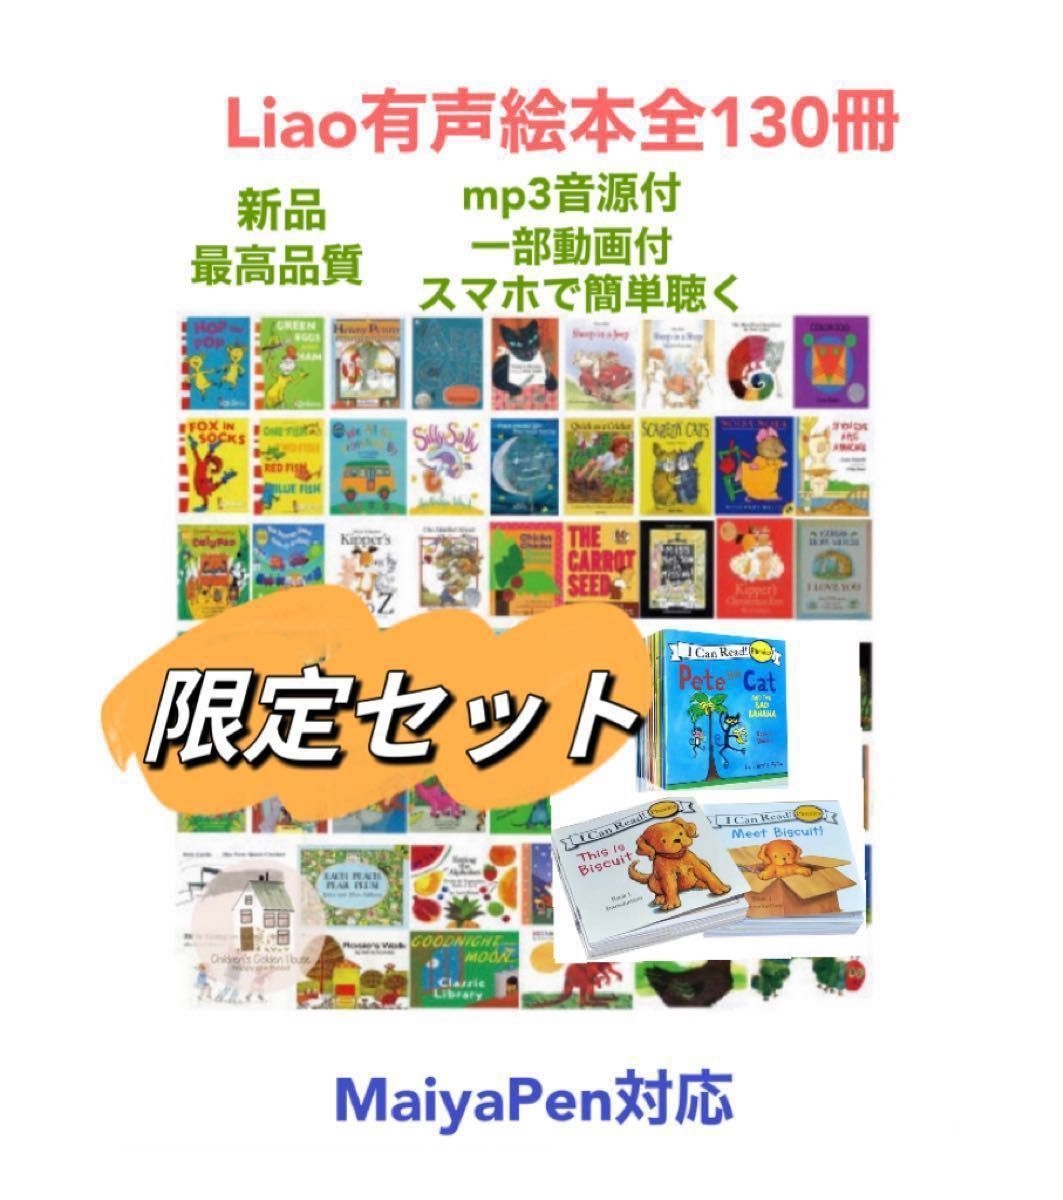 日本製 ロッテ2 Liao絵本130冊＆64GBマイヤペン等 絵本